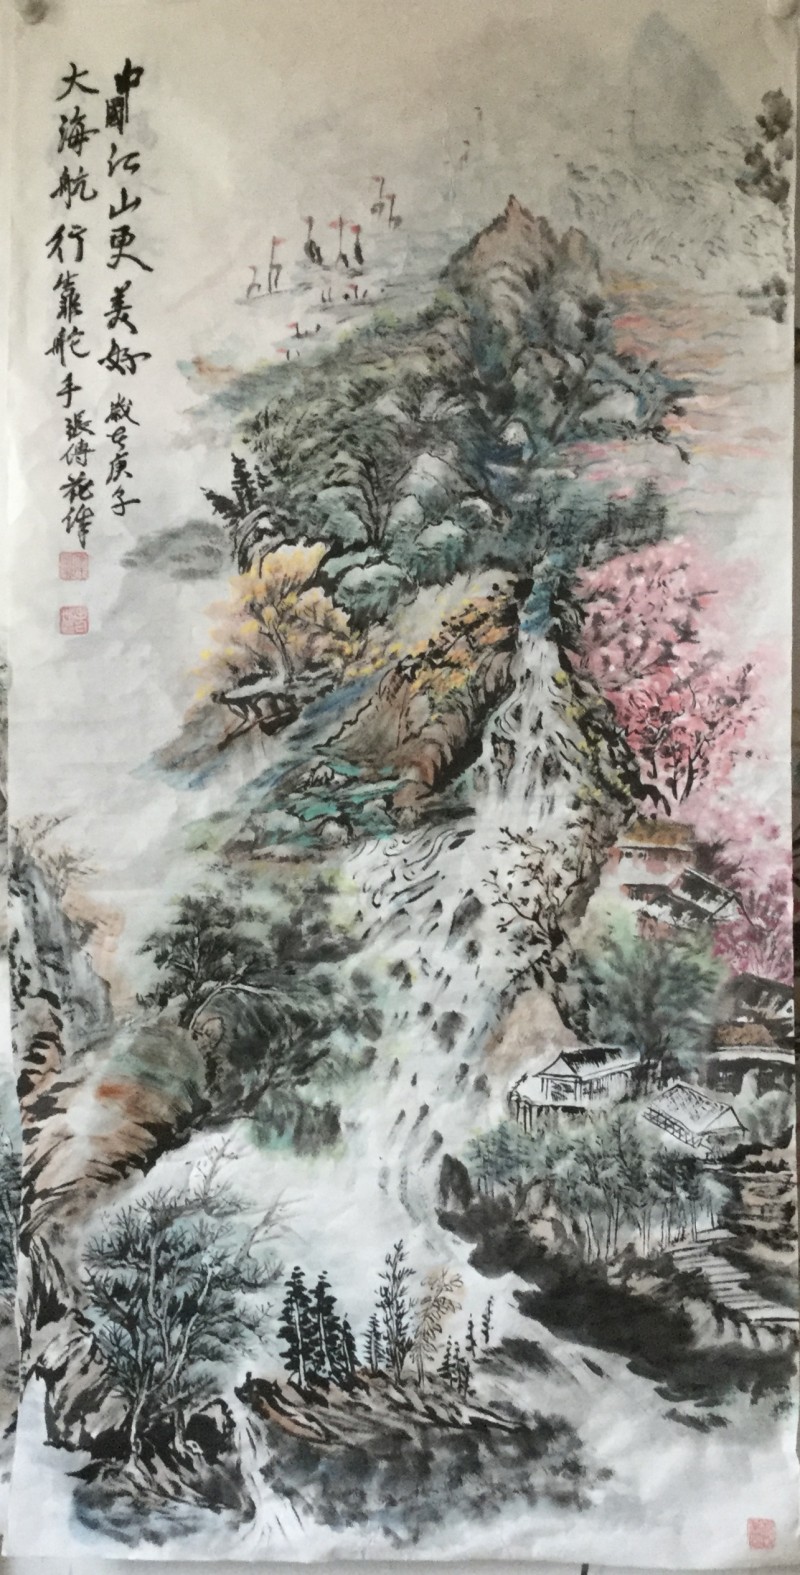 中国楹联学会中宣盛世文化艺术交流中心书画风采展示——张传花